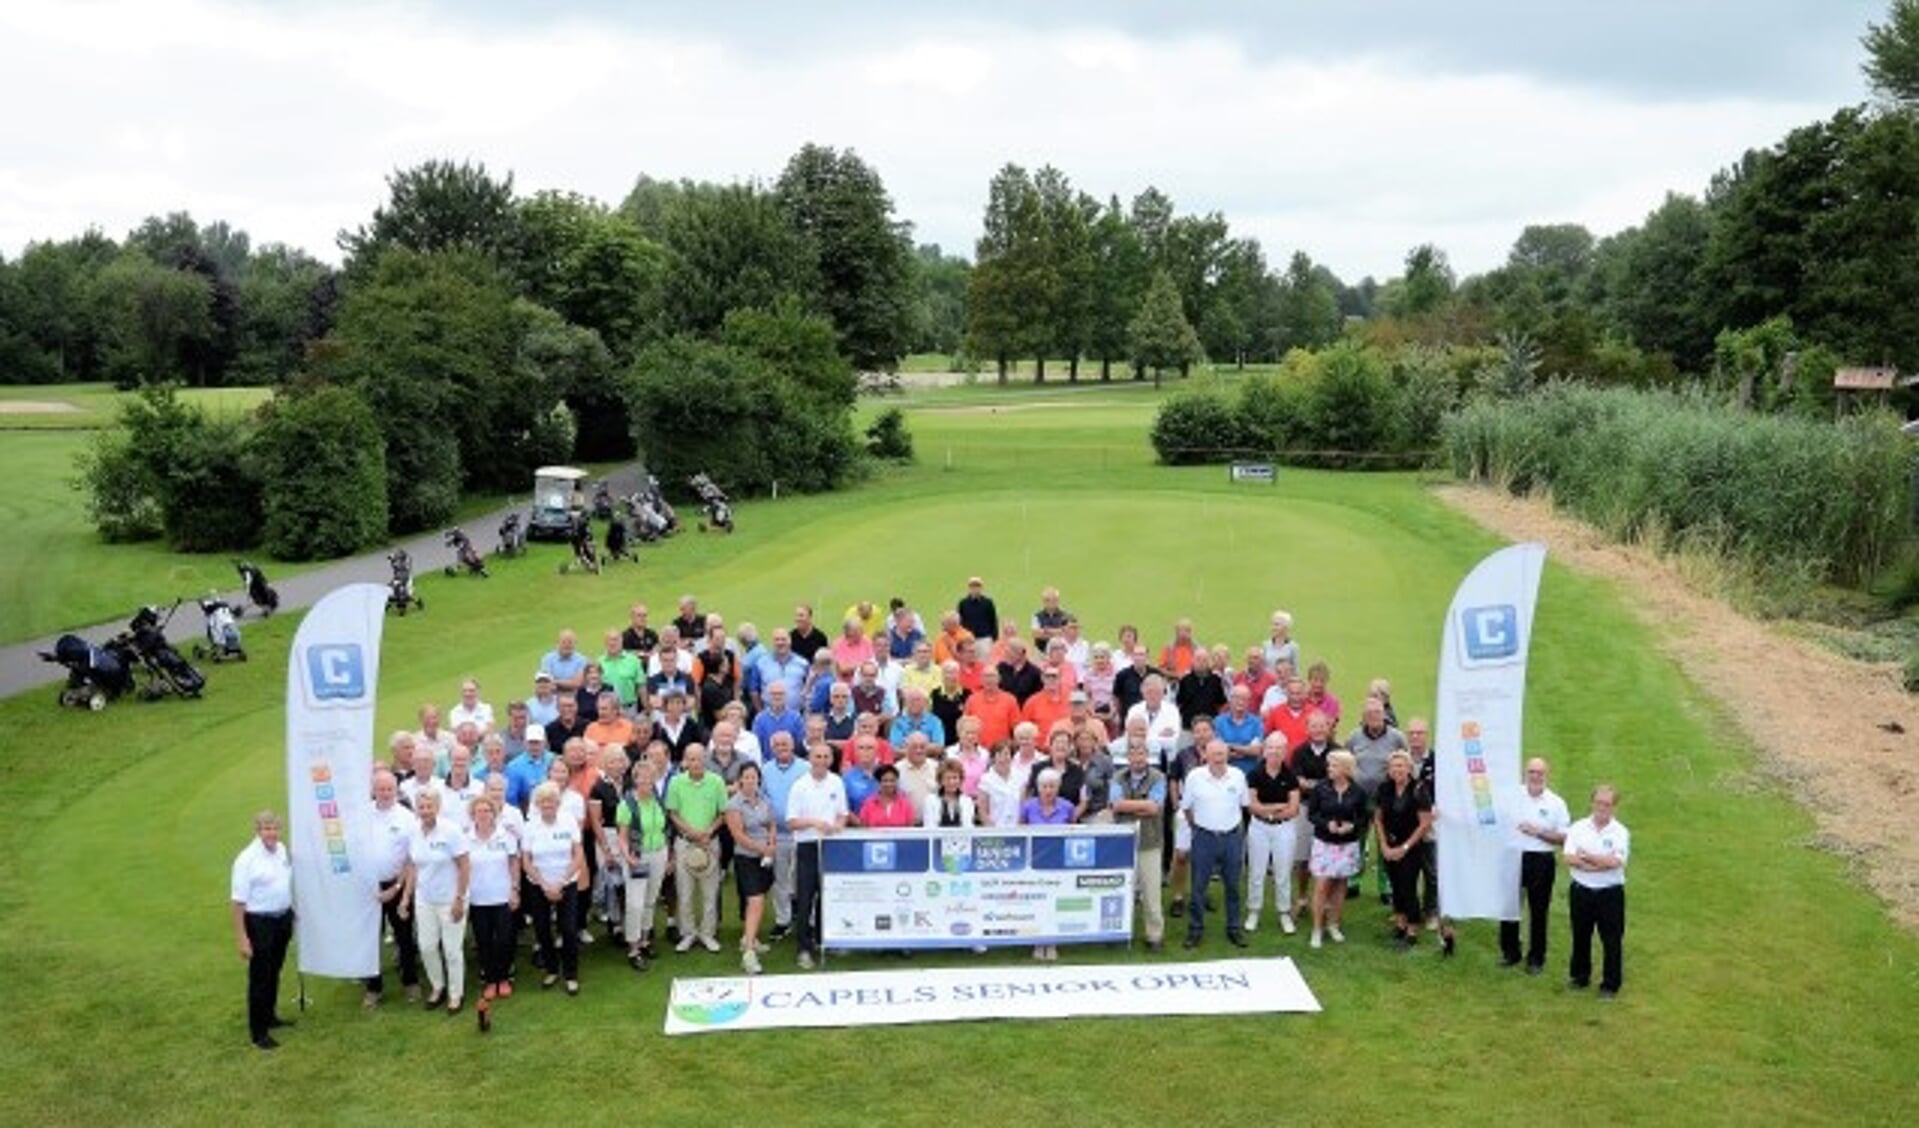 Voor de zevende keer werd het nationale Capels Senior Open gespeeld op de golfbaan van G&CC Capelle aan den IJssel.